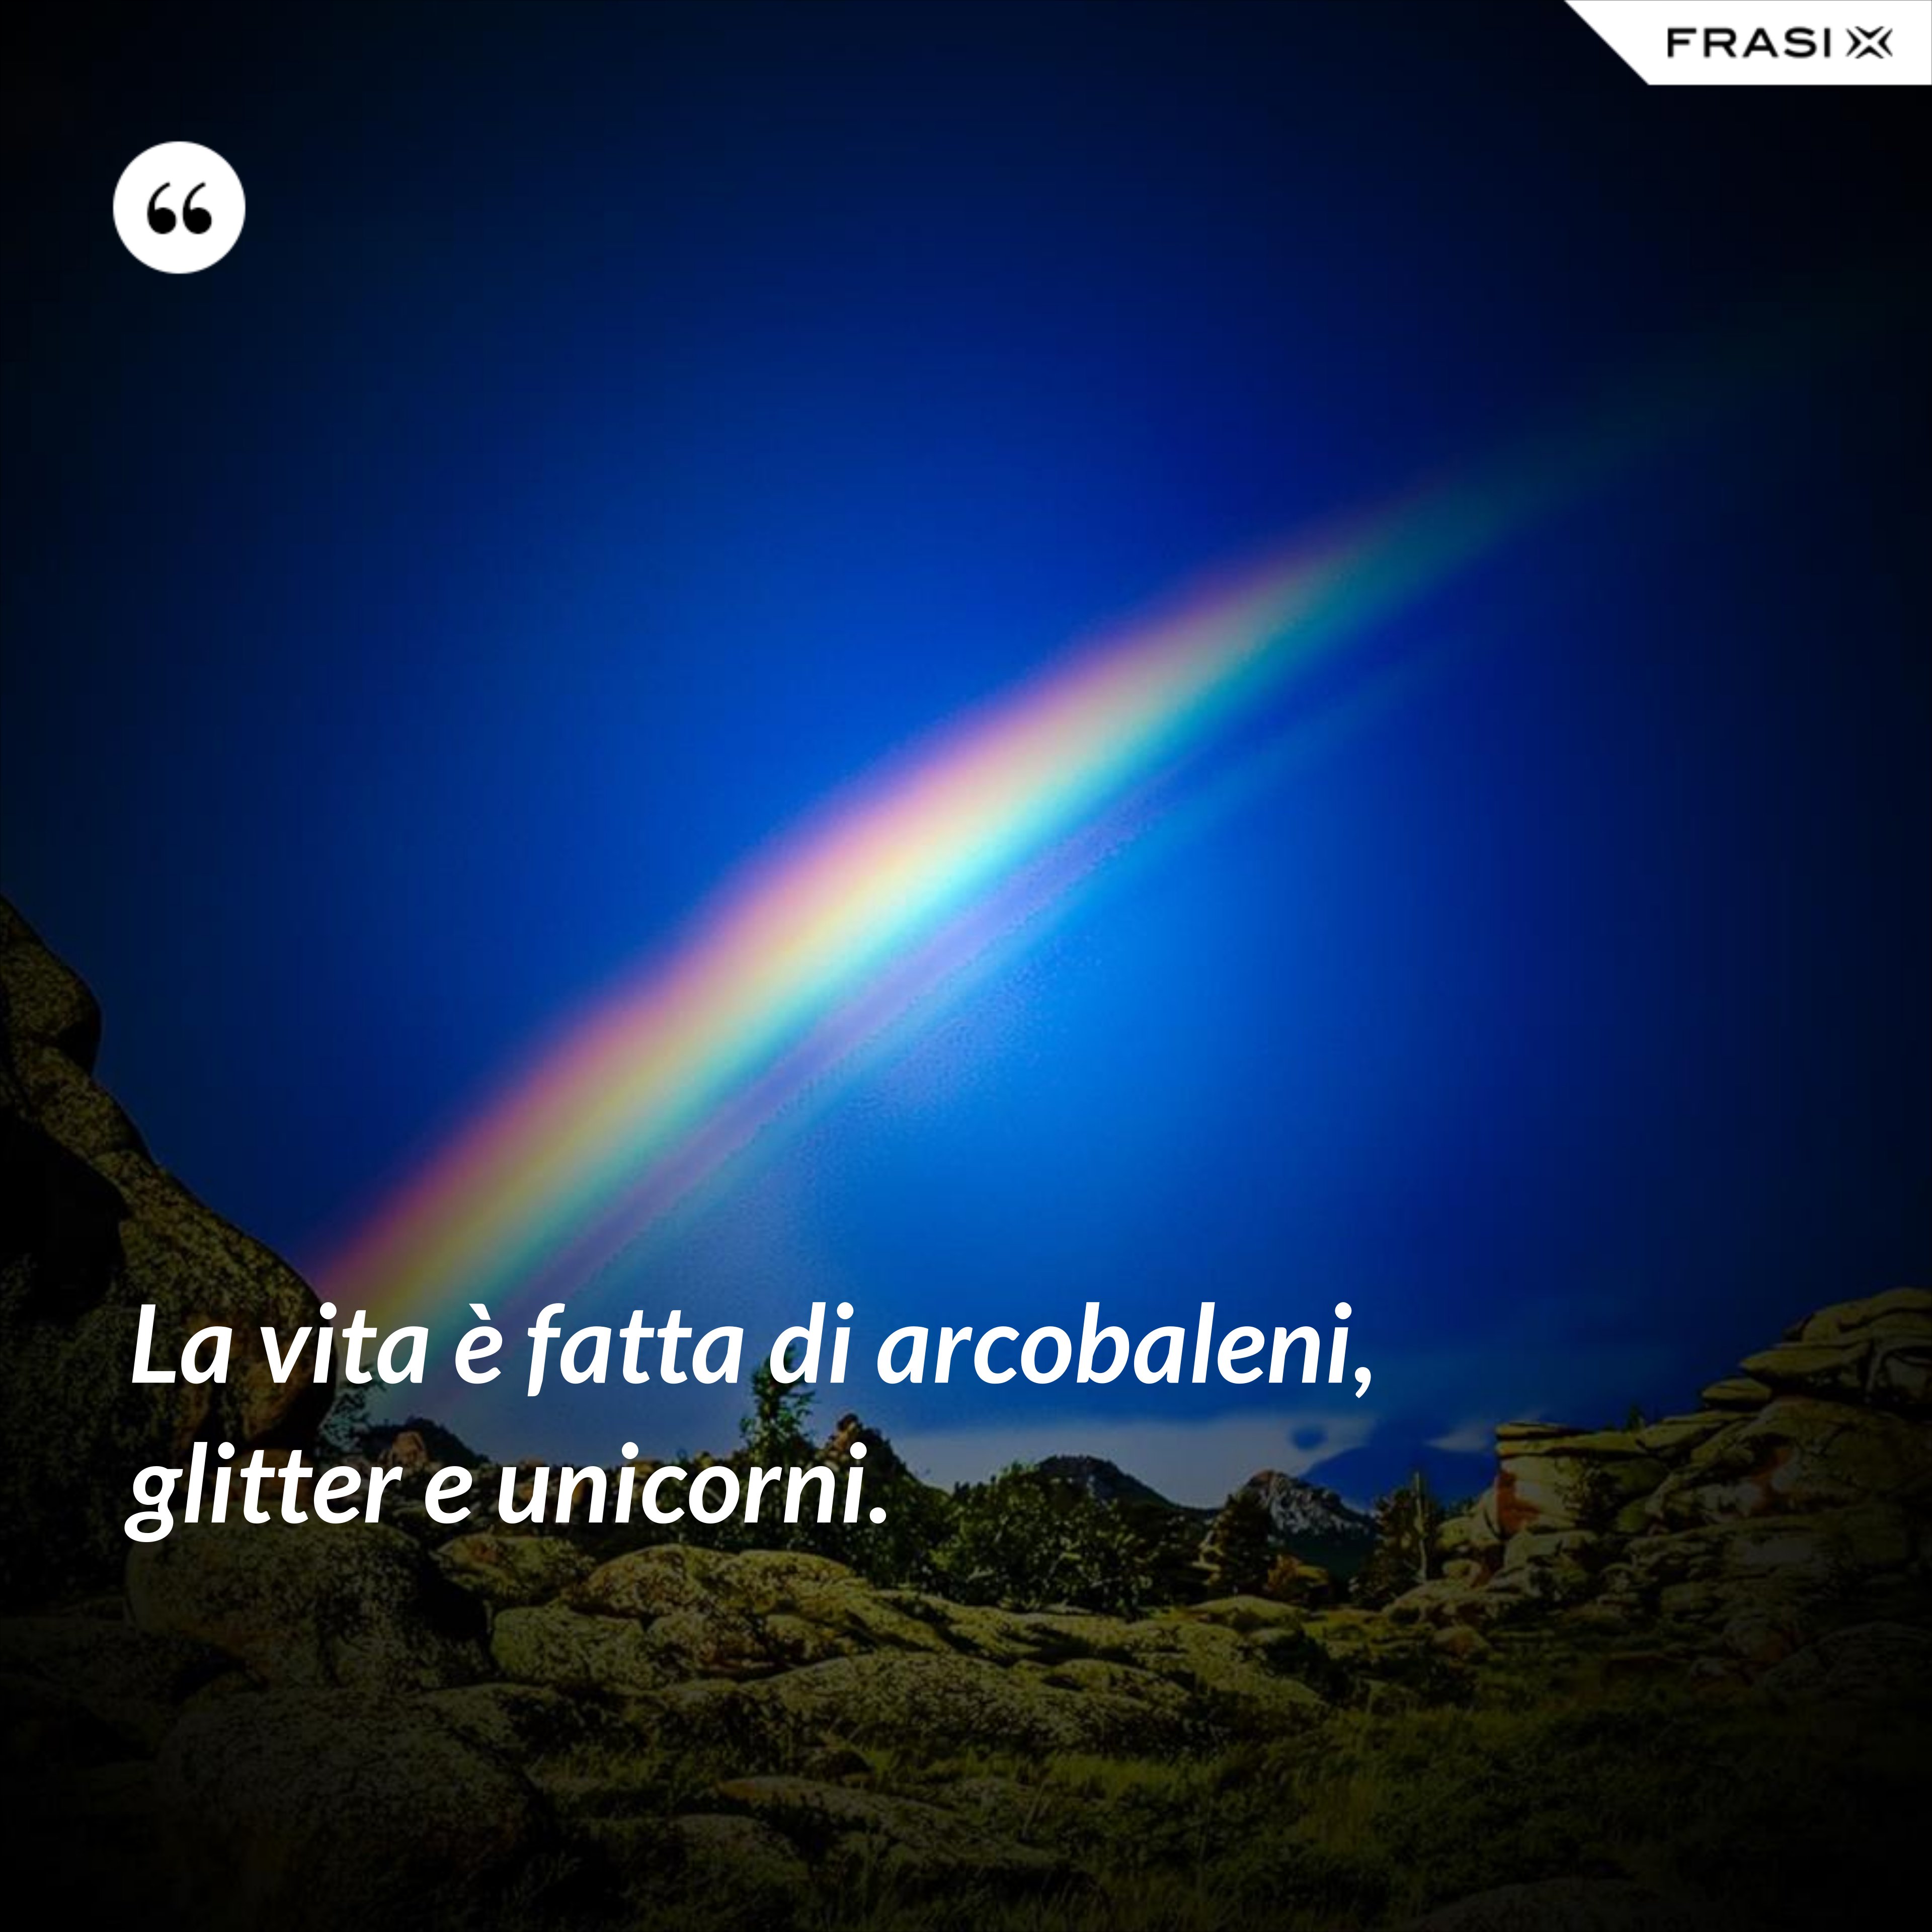 La vita è fatta di arcobaleni, glitter e unicorni. - Anonimo